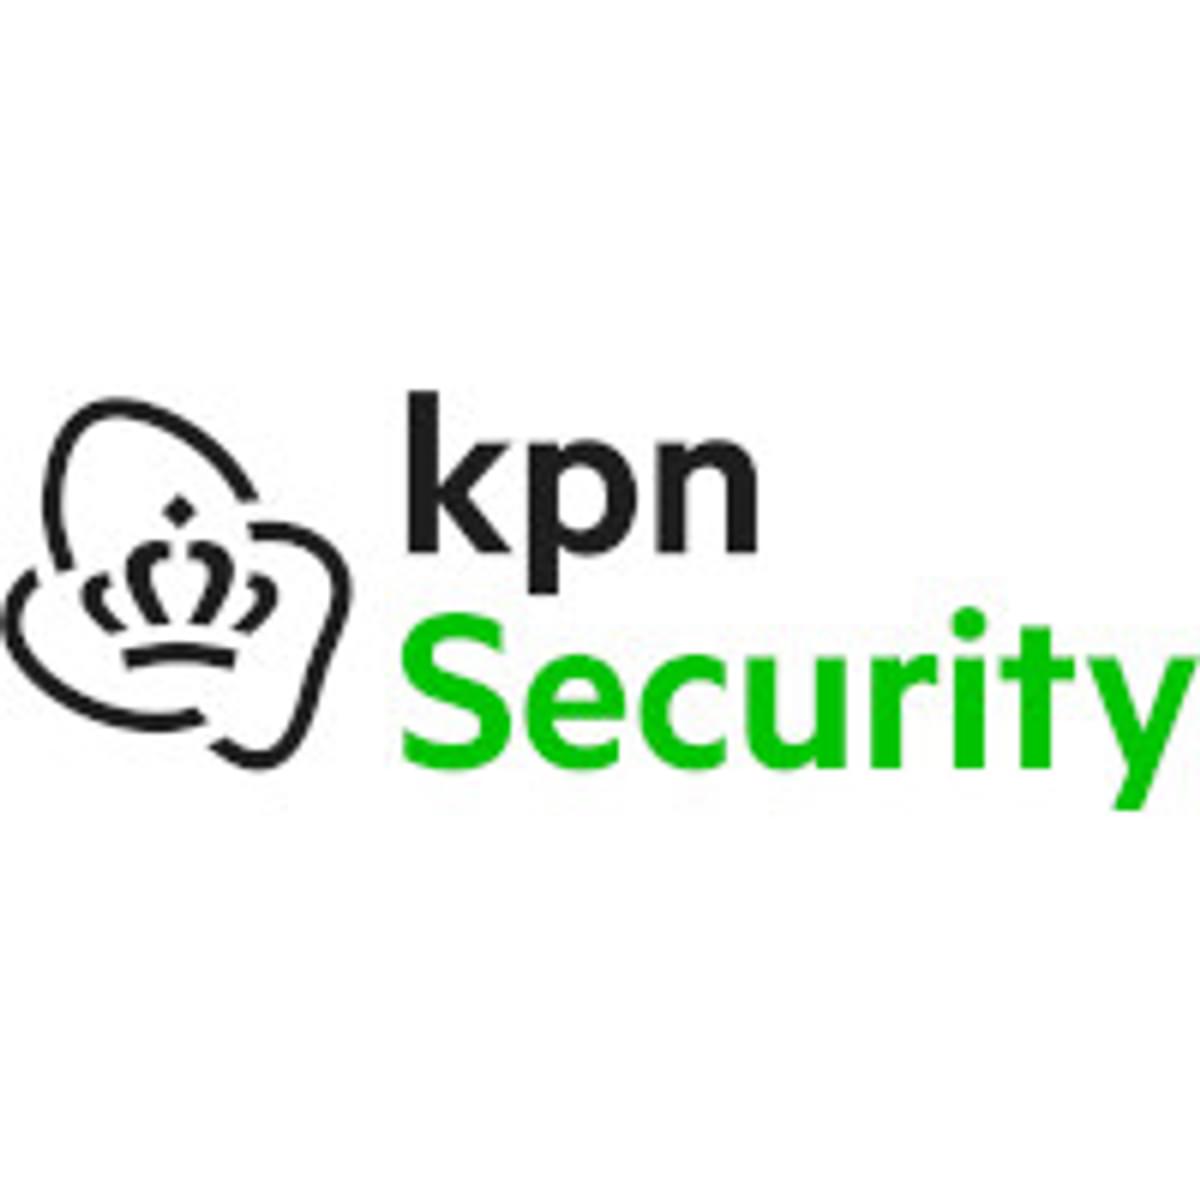 Menselijk brein staat centraal tijdens NLSecure[ID] event van KPN Security image